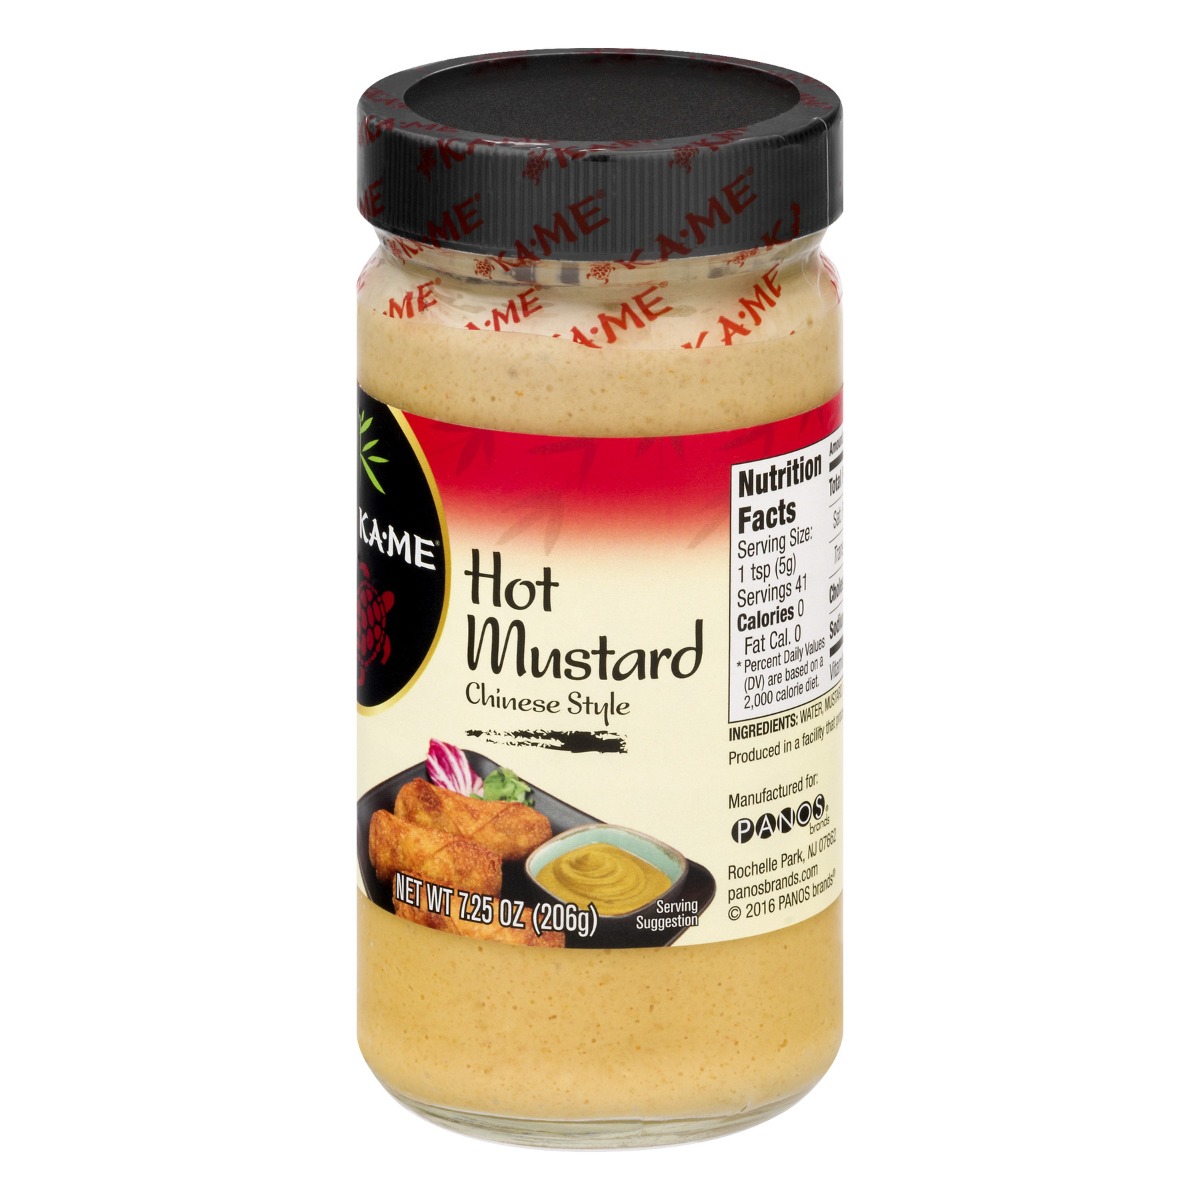 Ka-Me, Chinese Style Hot Mustard - 070844005301